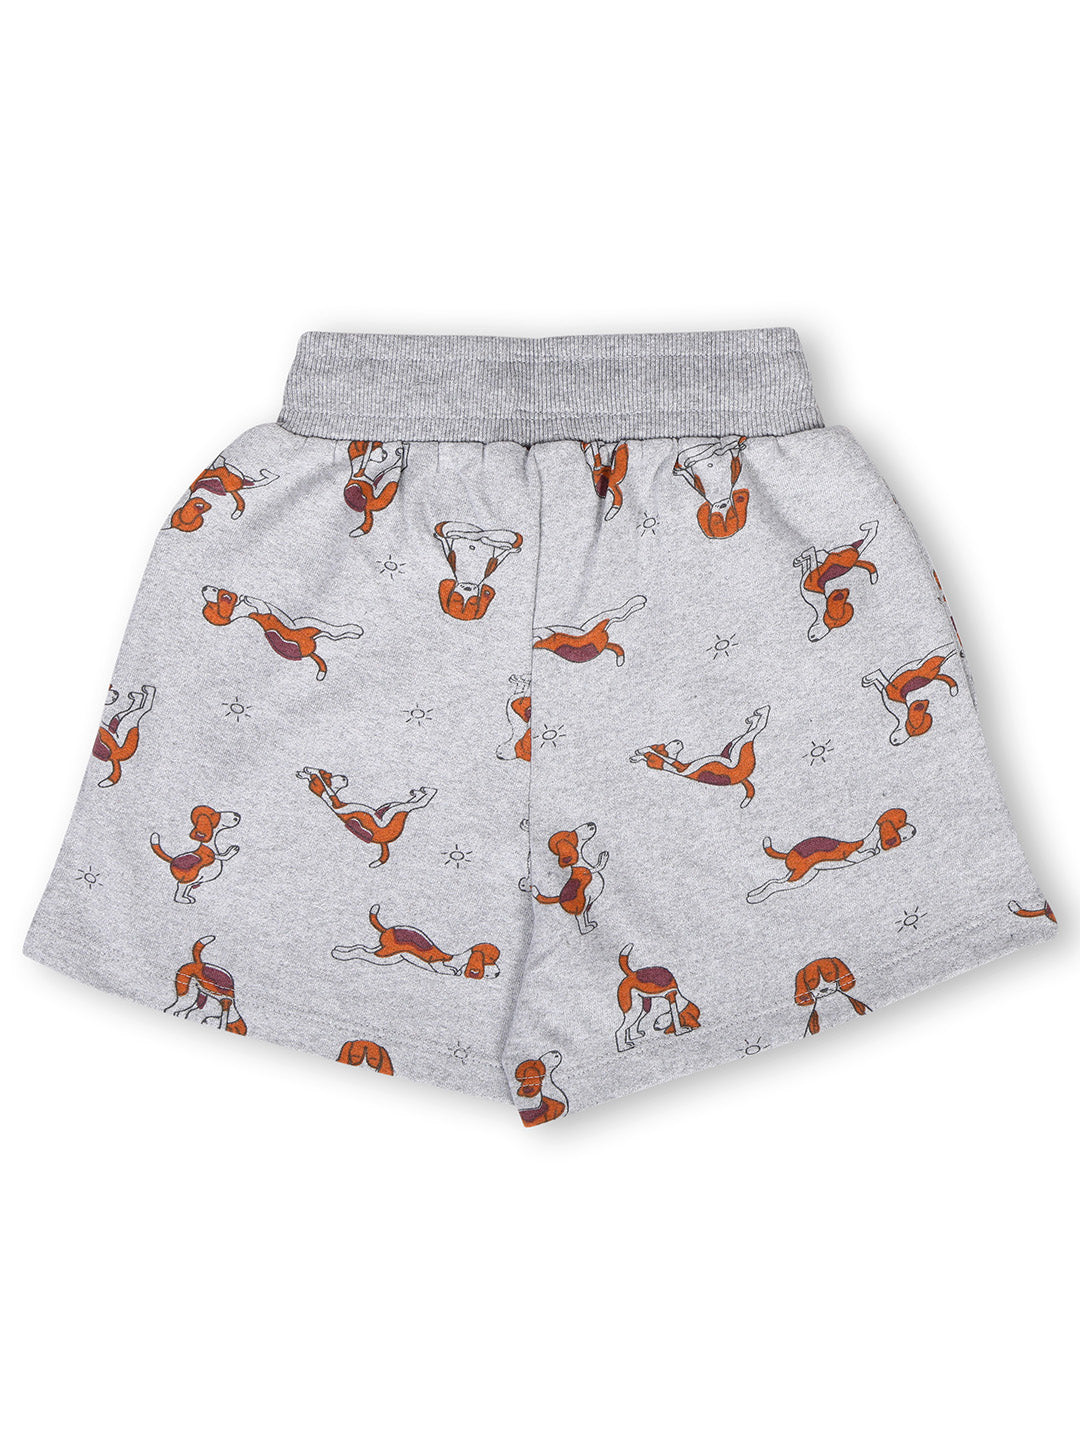 TWGE - Kids Shorts for Girls - Short Pants - Printed Regular Fit Half Pants - Color Grey